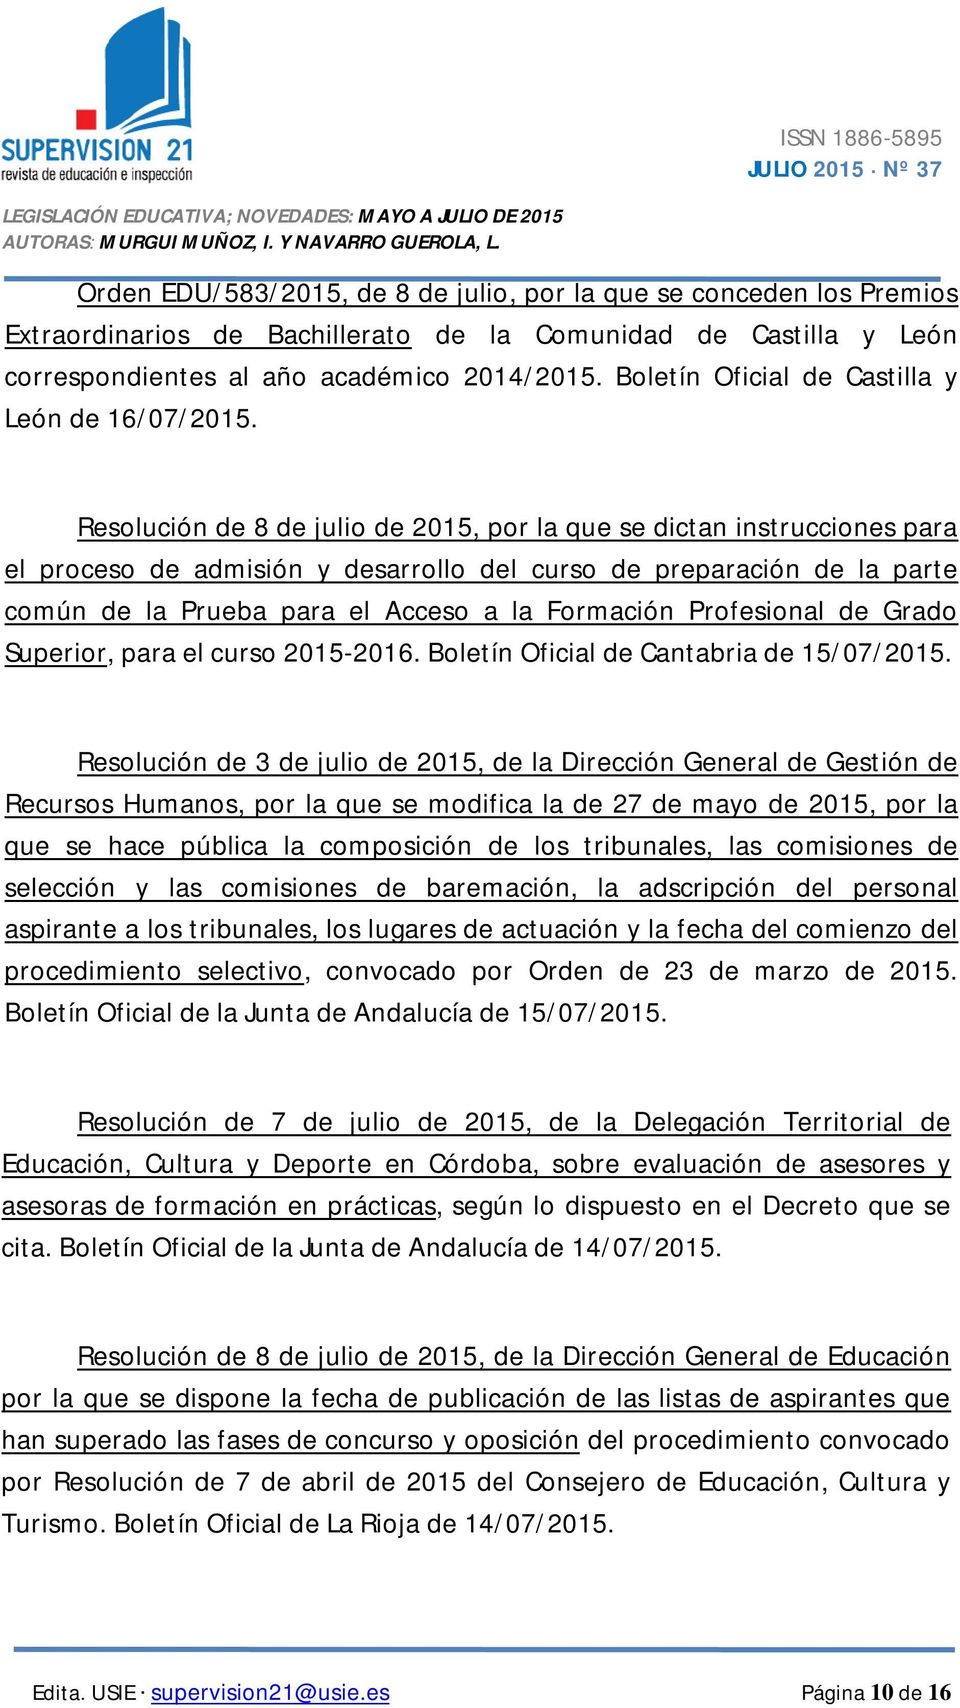 Resolución de 8 de julio de 2015, por la que se dictan instrucciones para el proceso de admisión y desarrollo del curso de preparación de la parte común de la Prueba para el Acceso a la Formación